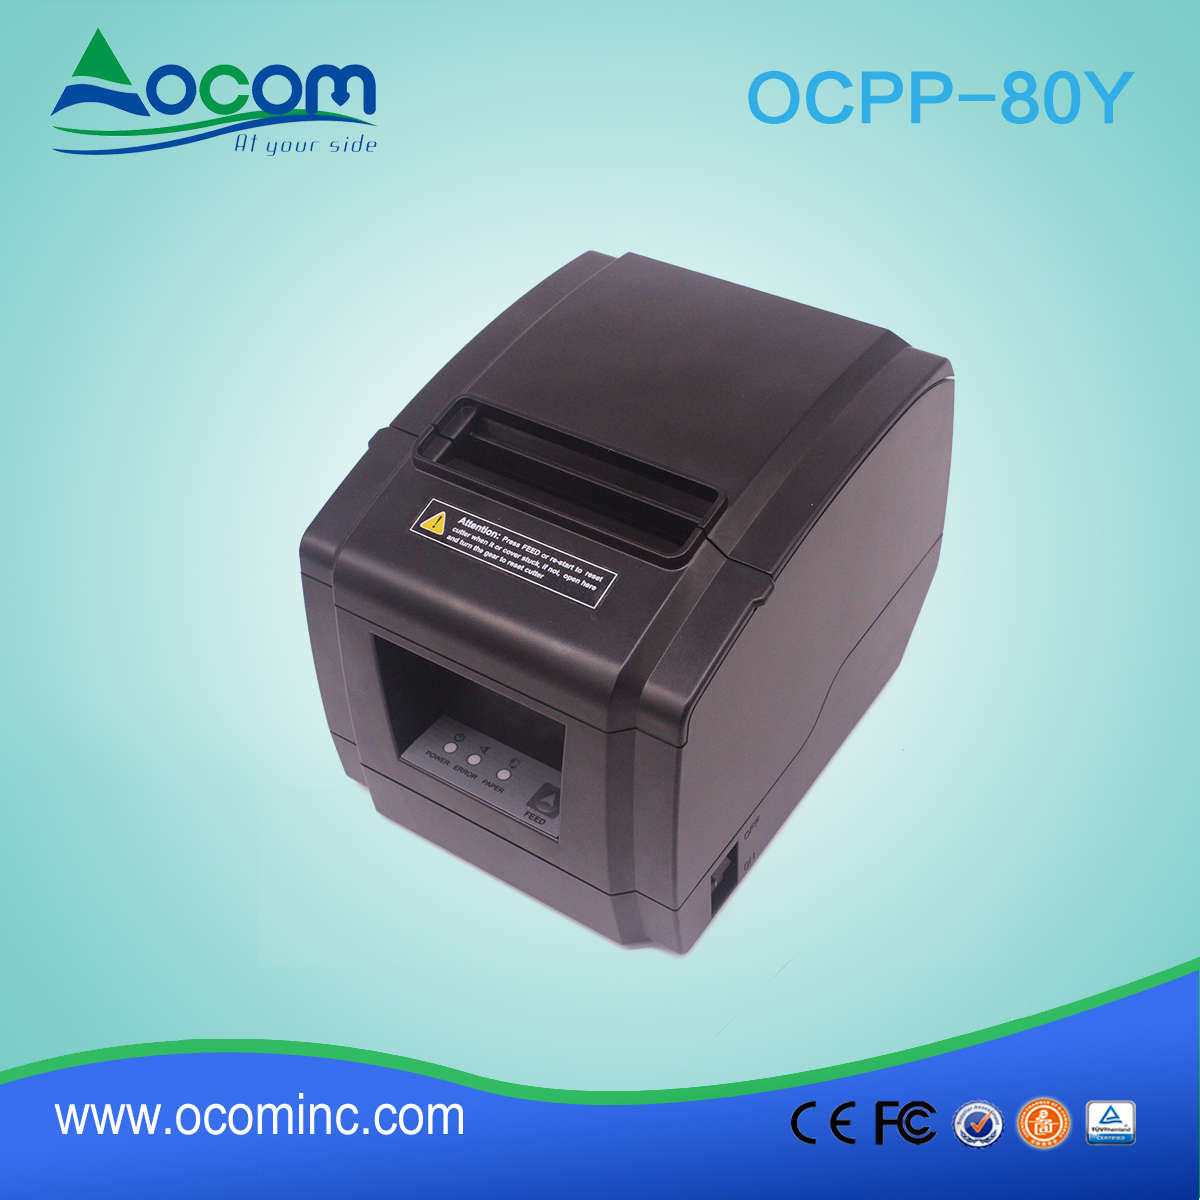 Nowy Model ocpp-80y 80 mm termiczna drukarka paragonów z automatyczna krajarka